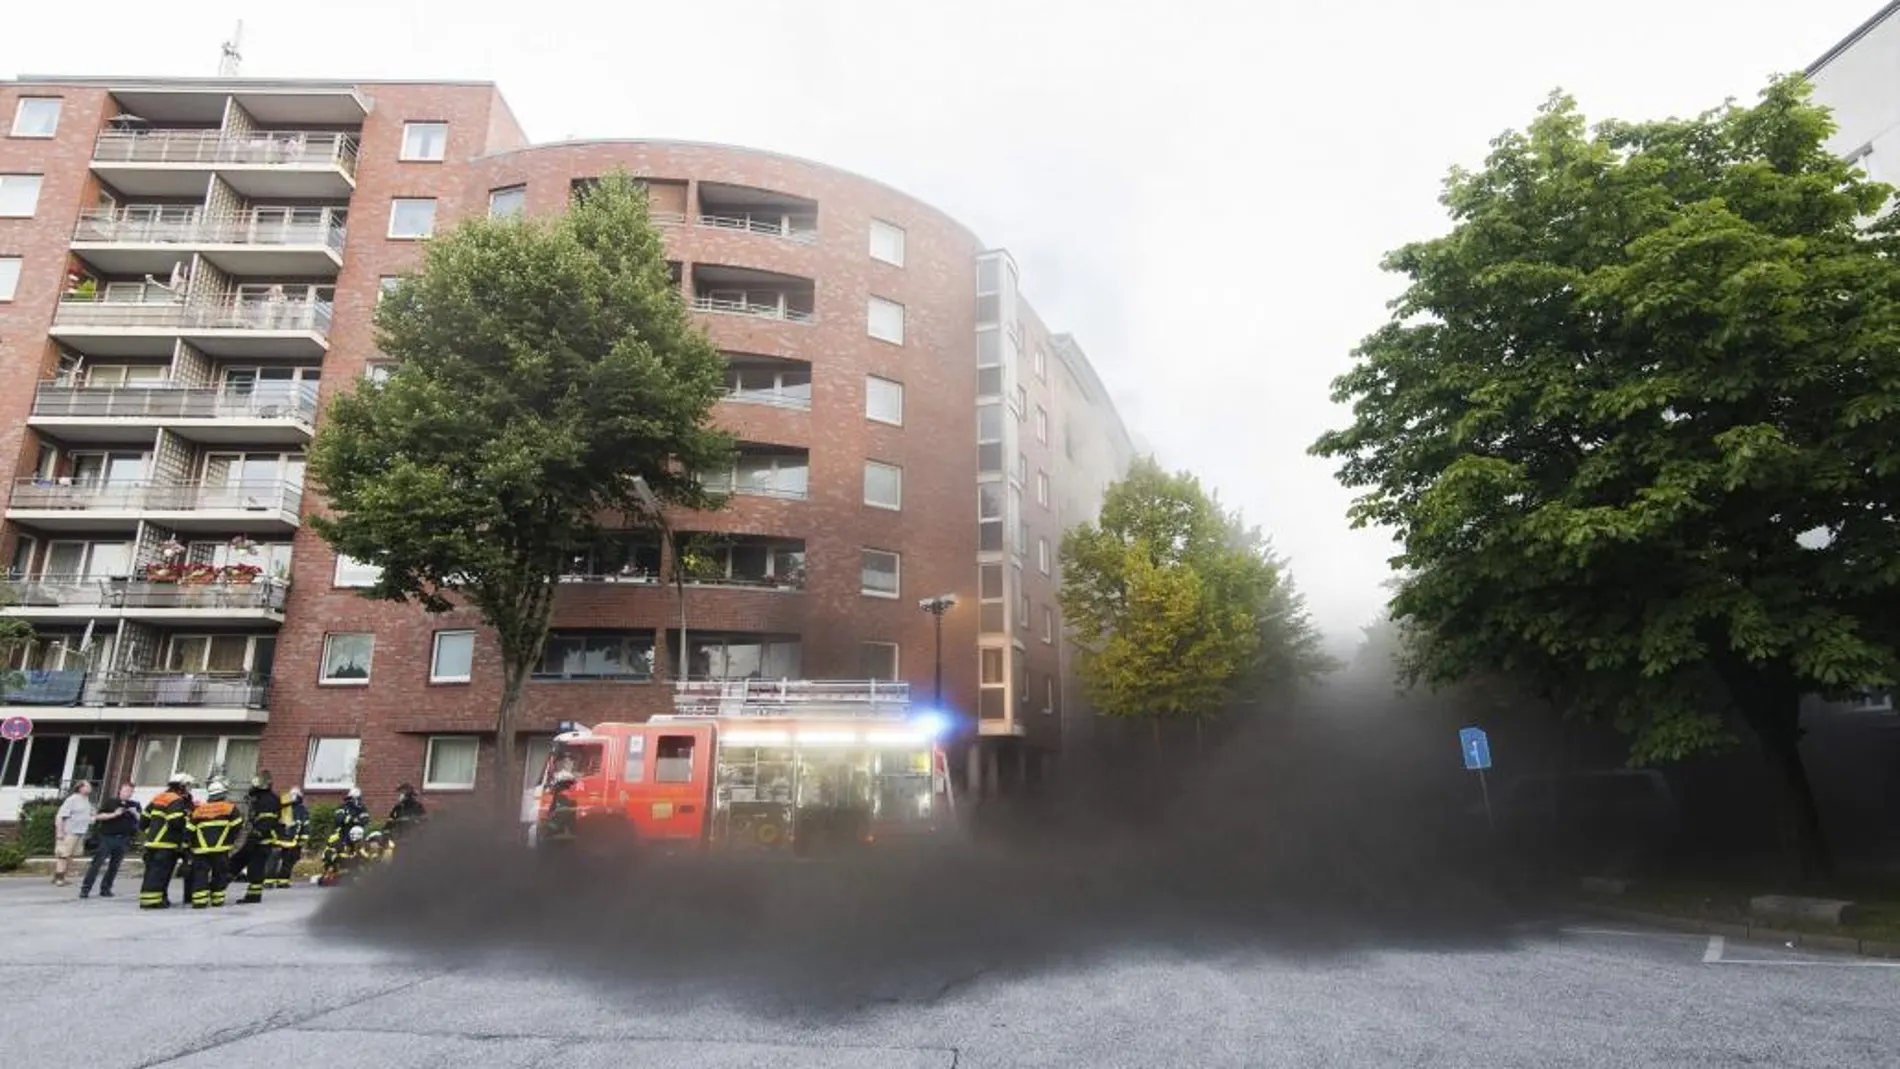 Servicios de emergencia acuden al lugar donde se ha producido un incendio en una carpintería en Hamburgo (Alemania).